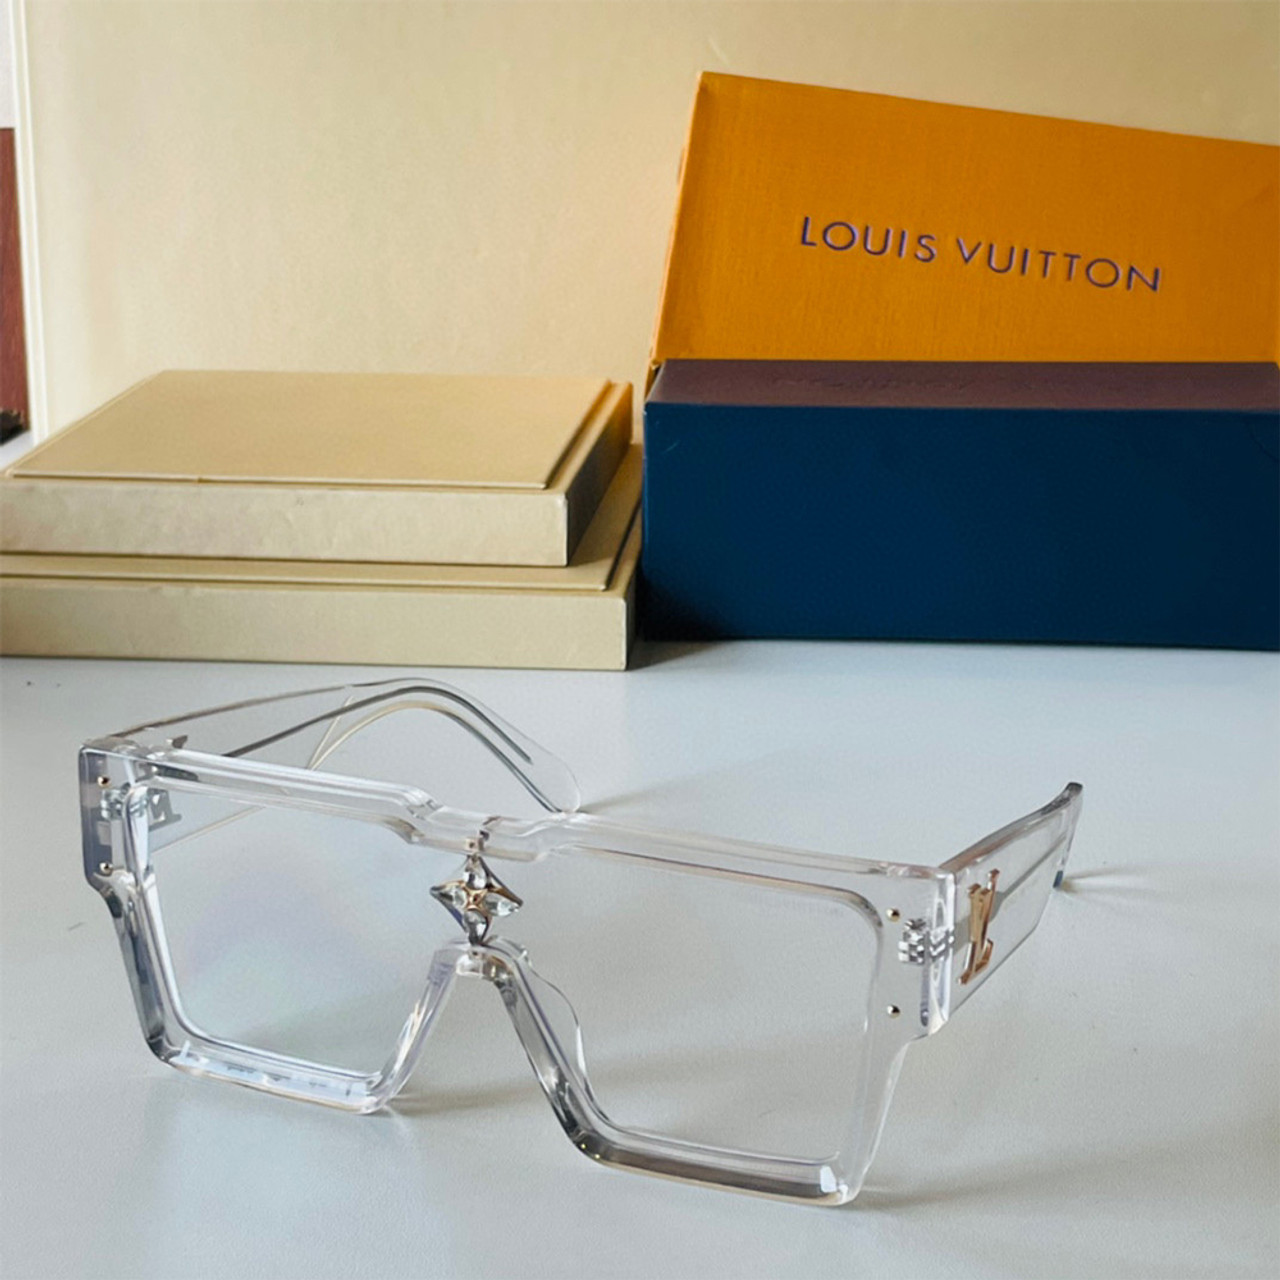 Virgil Abloh's latest Louis Vuitton Cyclone #LVSunglasses - Live